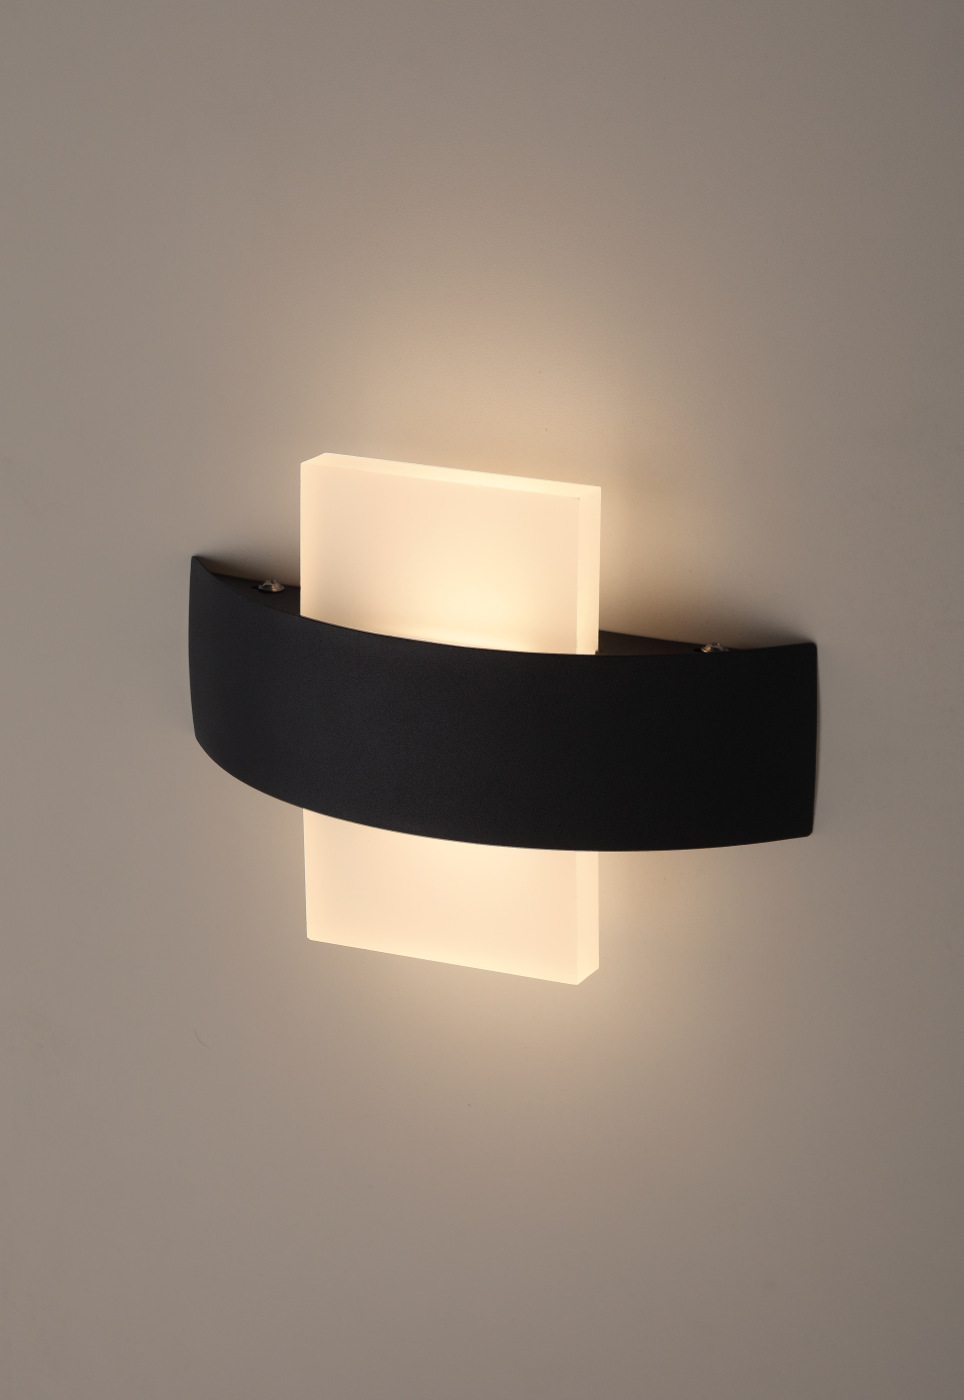 Декоративная подсветка светодиодная ЭРА WL7 WH+BK 6Вт IP54 белый/черный декоративная подсветка светодиодная эра wl4 wh 2 3вт ip54 белый